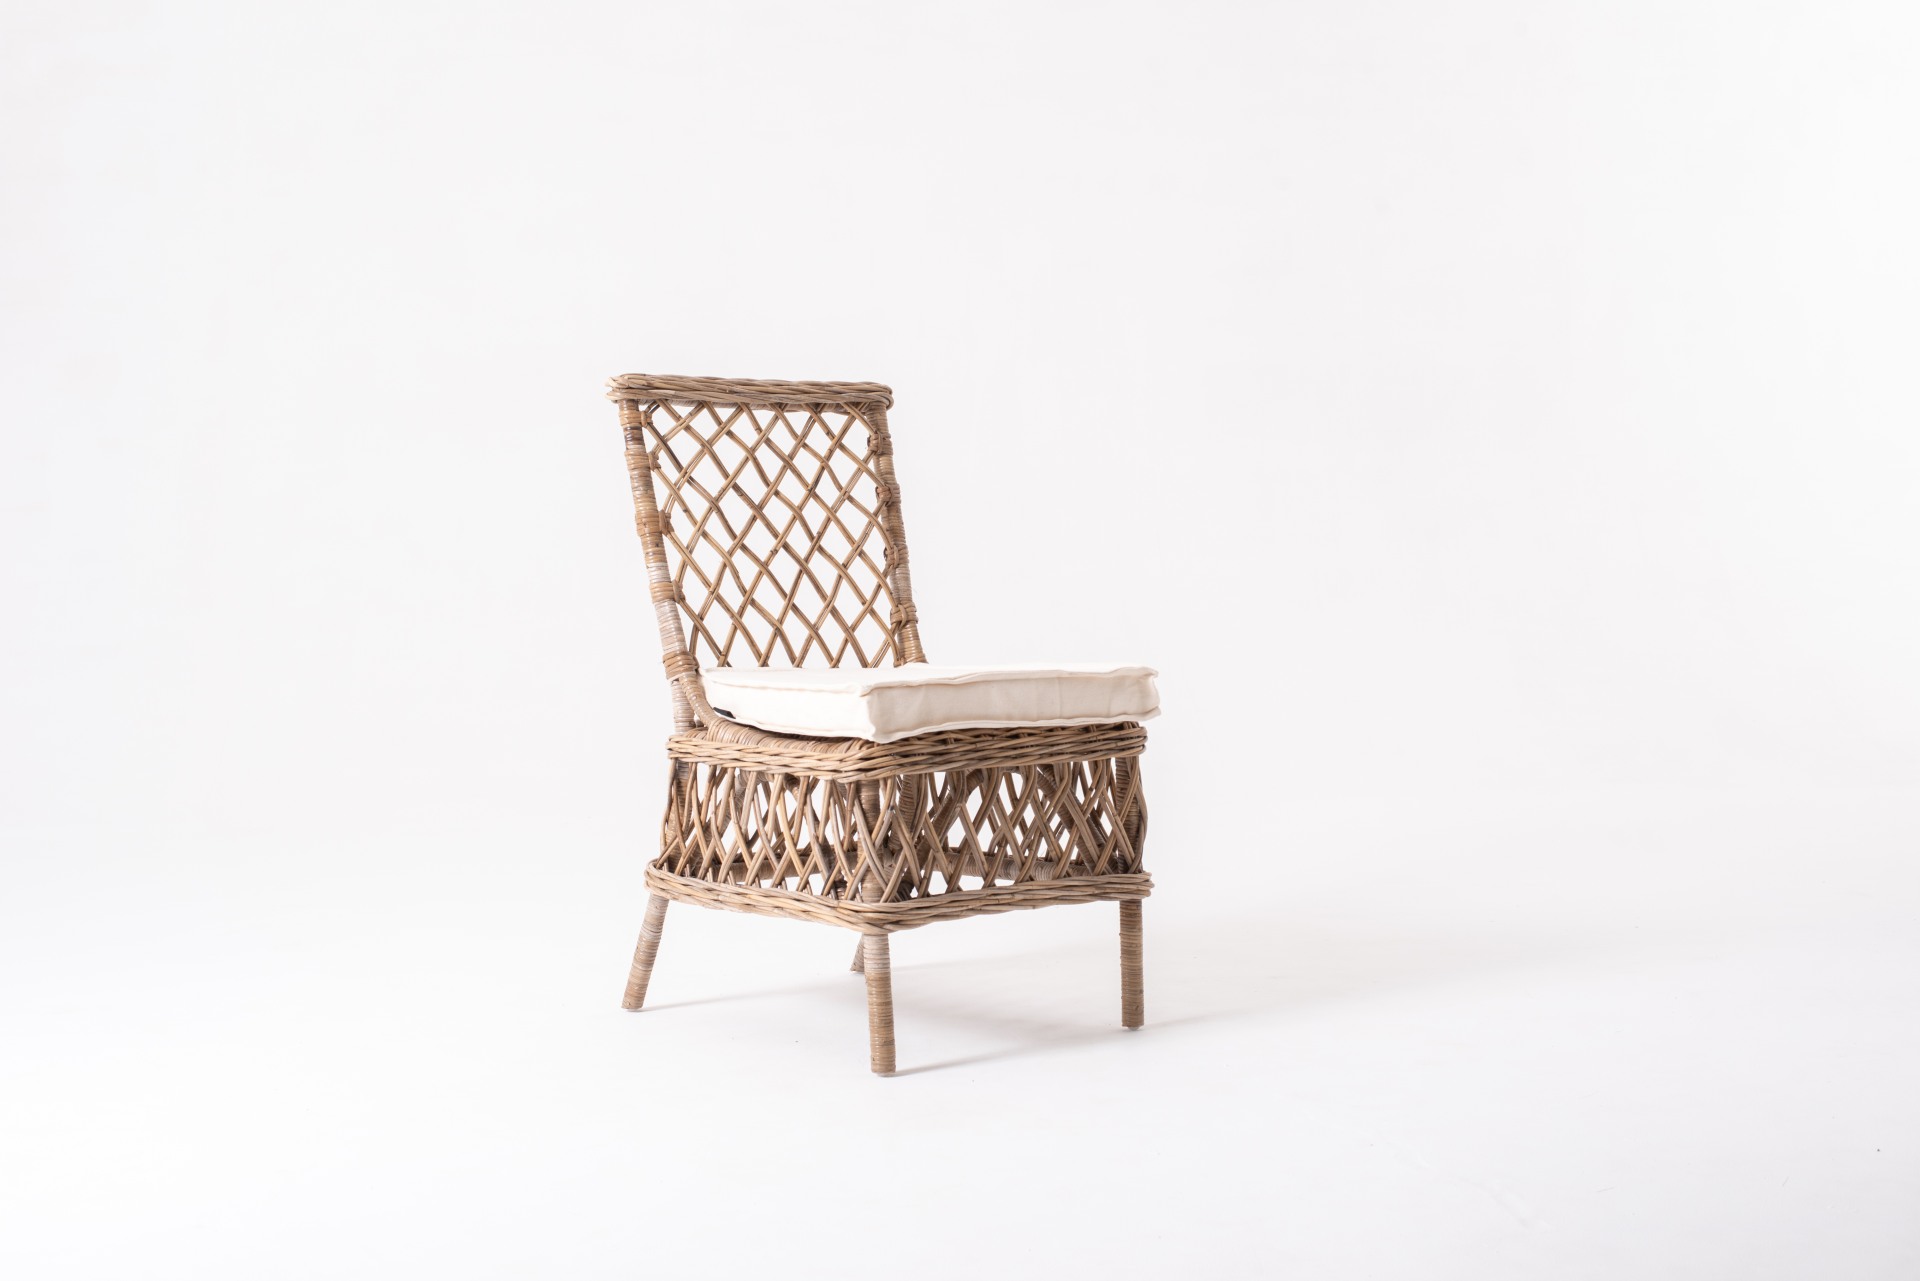 Der Stuhl Aristocrat überzeugt mit seinem Landhaus Stil. Gefertigt wurde er aus Kabu Rattan, welches einen braunen Farbton besitzt. Der Stuhl ist im 2er-Set erhältlich. Die Sitzhöhe beträgt beträgt 46 cm.